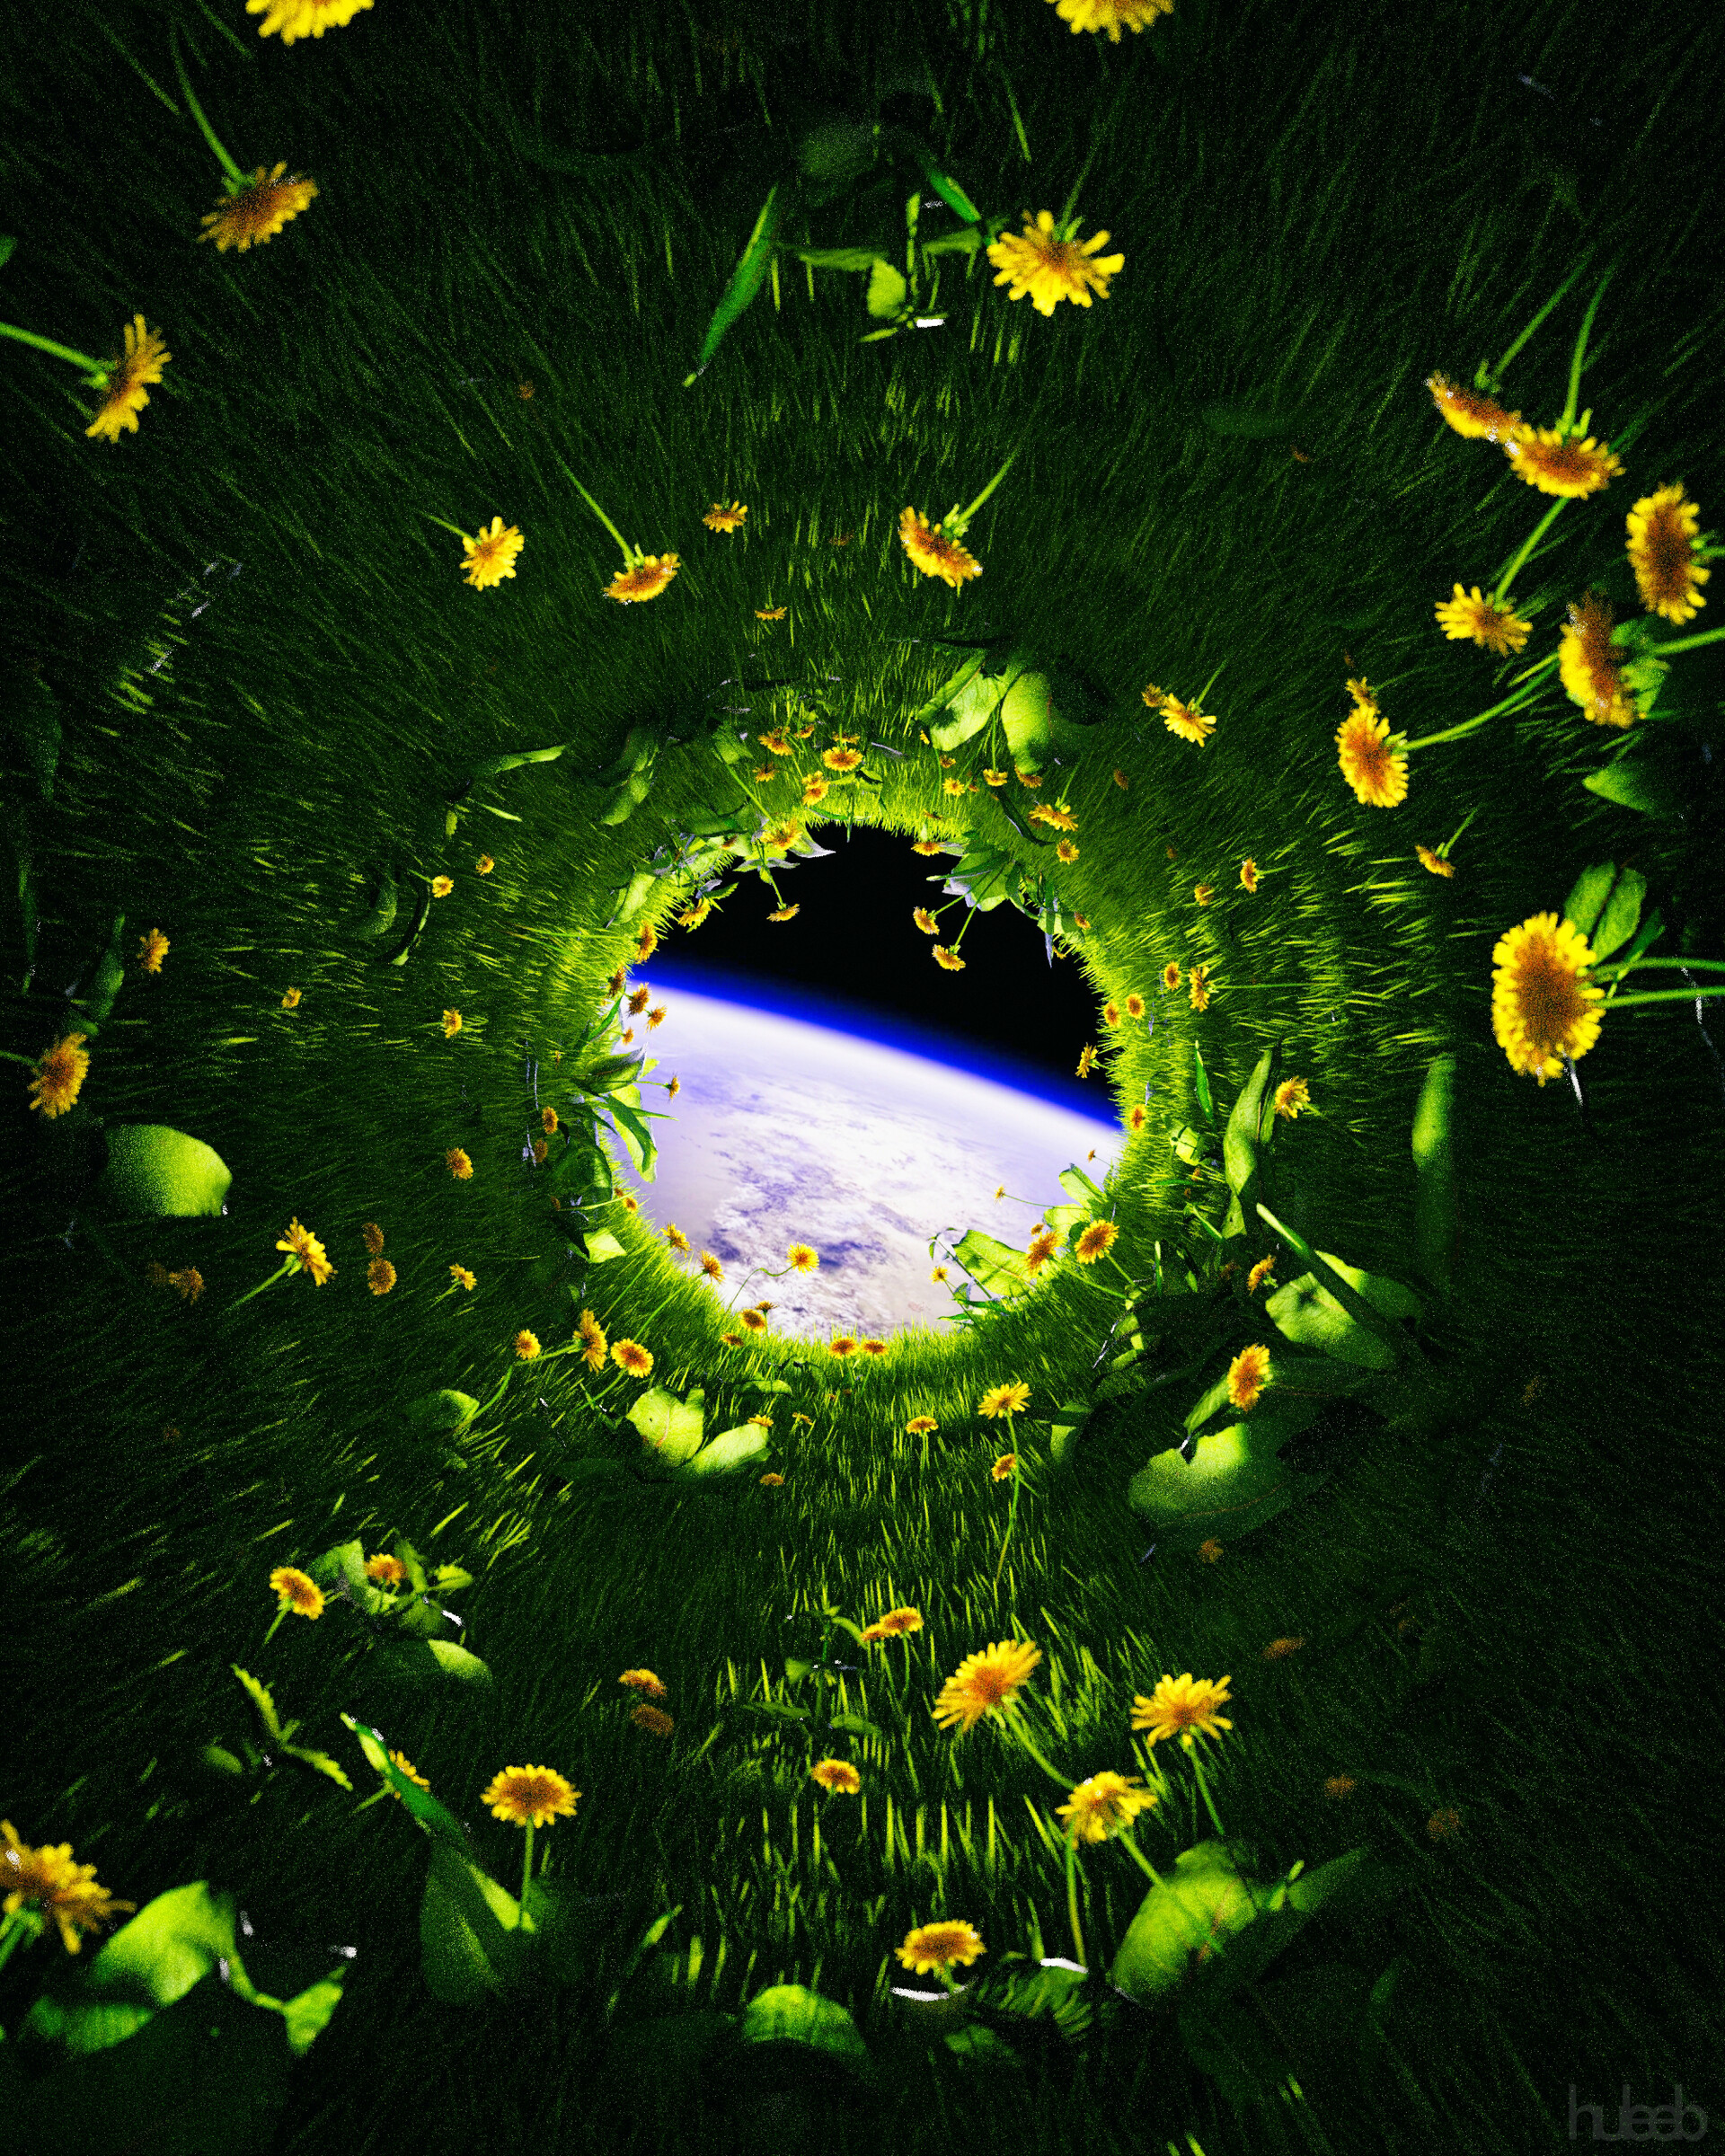 flowers, grass, universe, dandelions, miscellanea, miscellaneous, land, earth HD for desktop 1080p